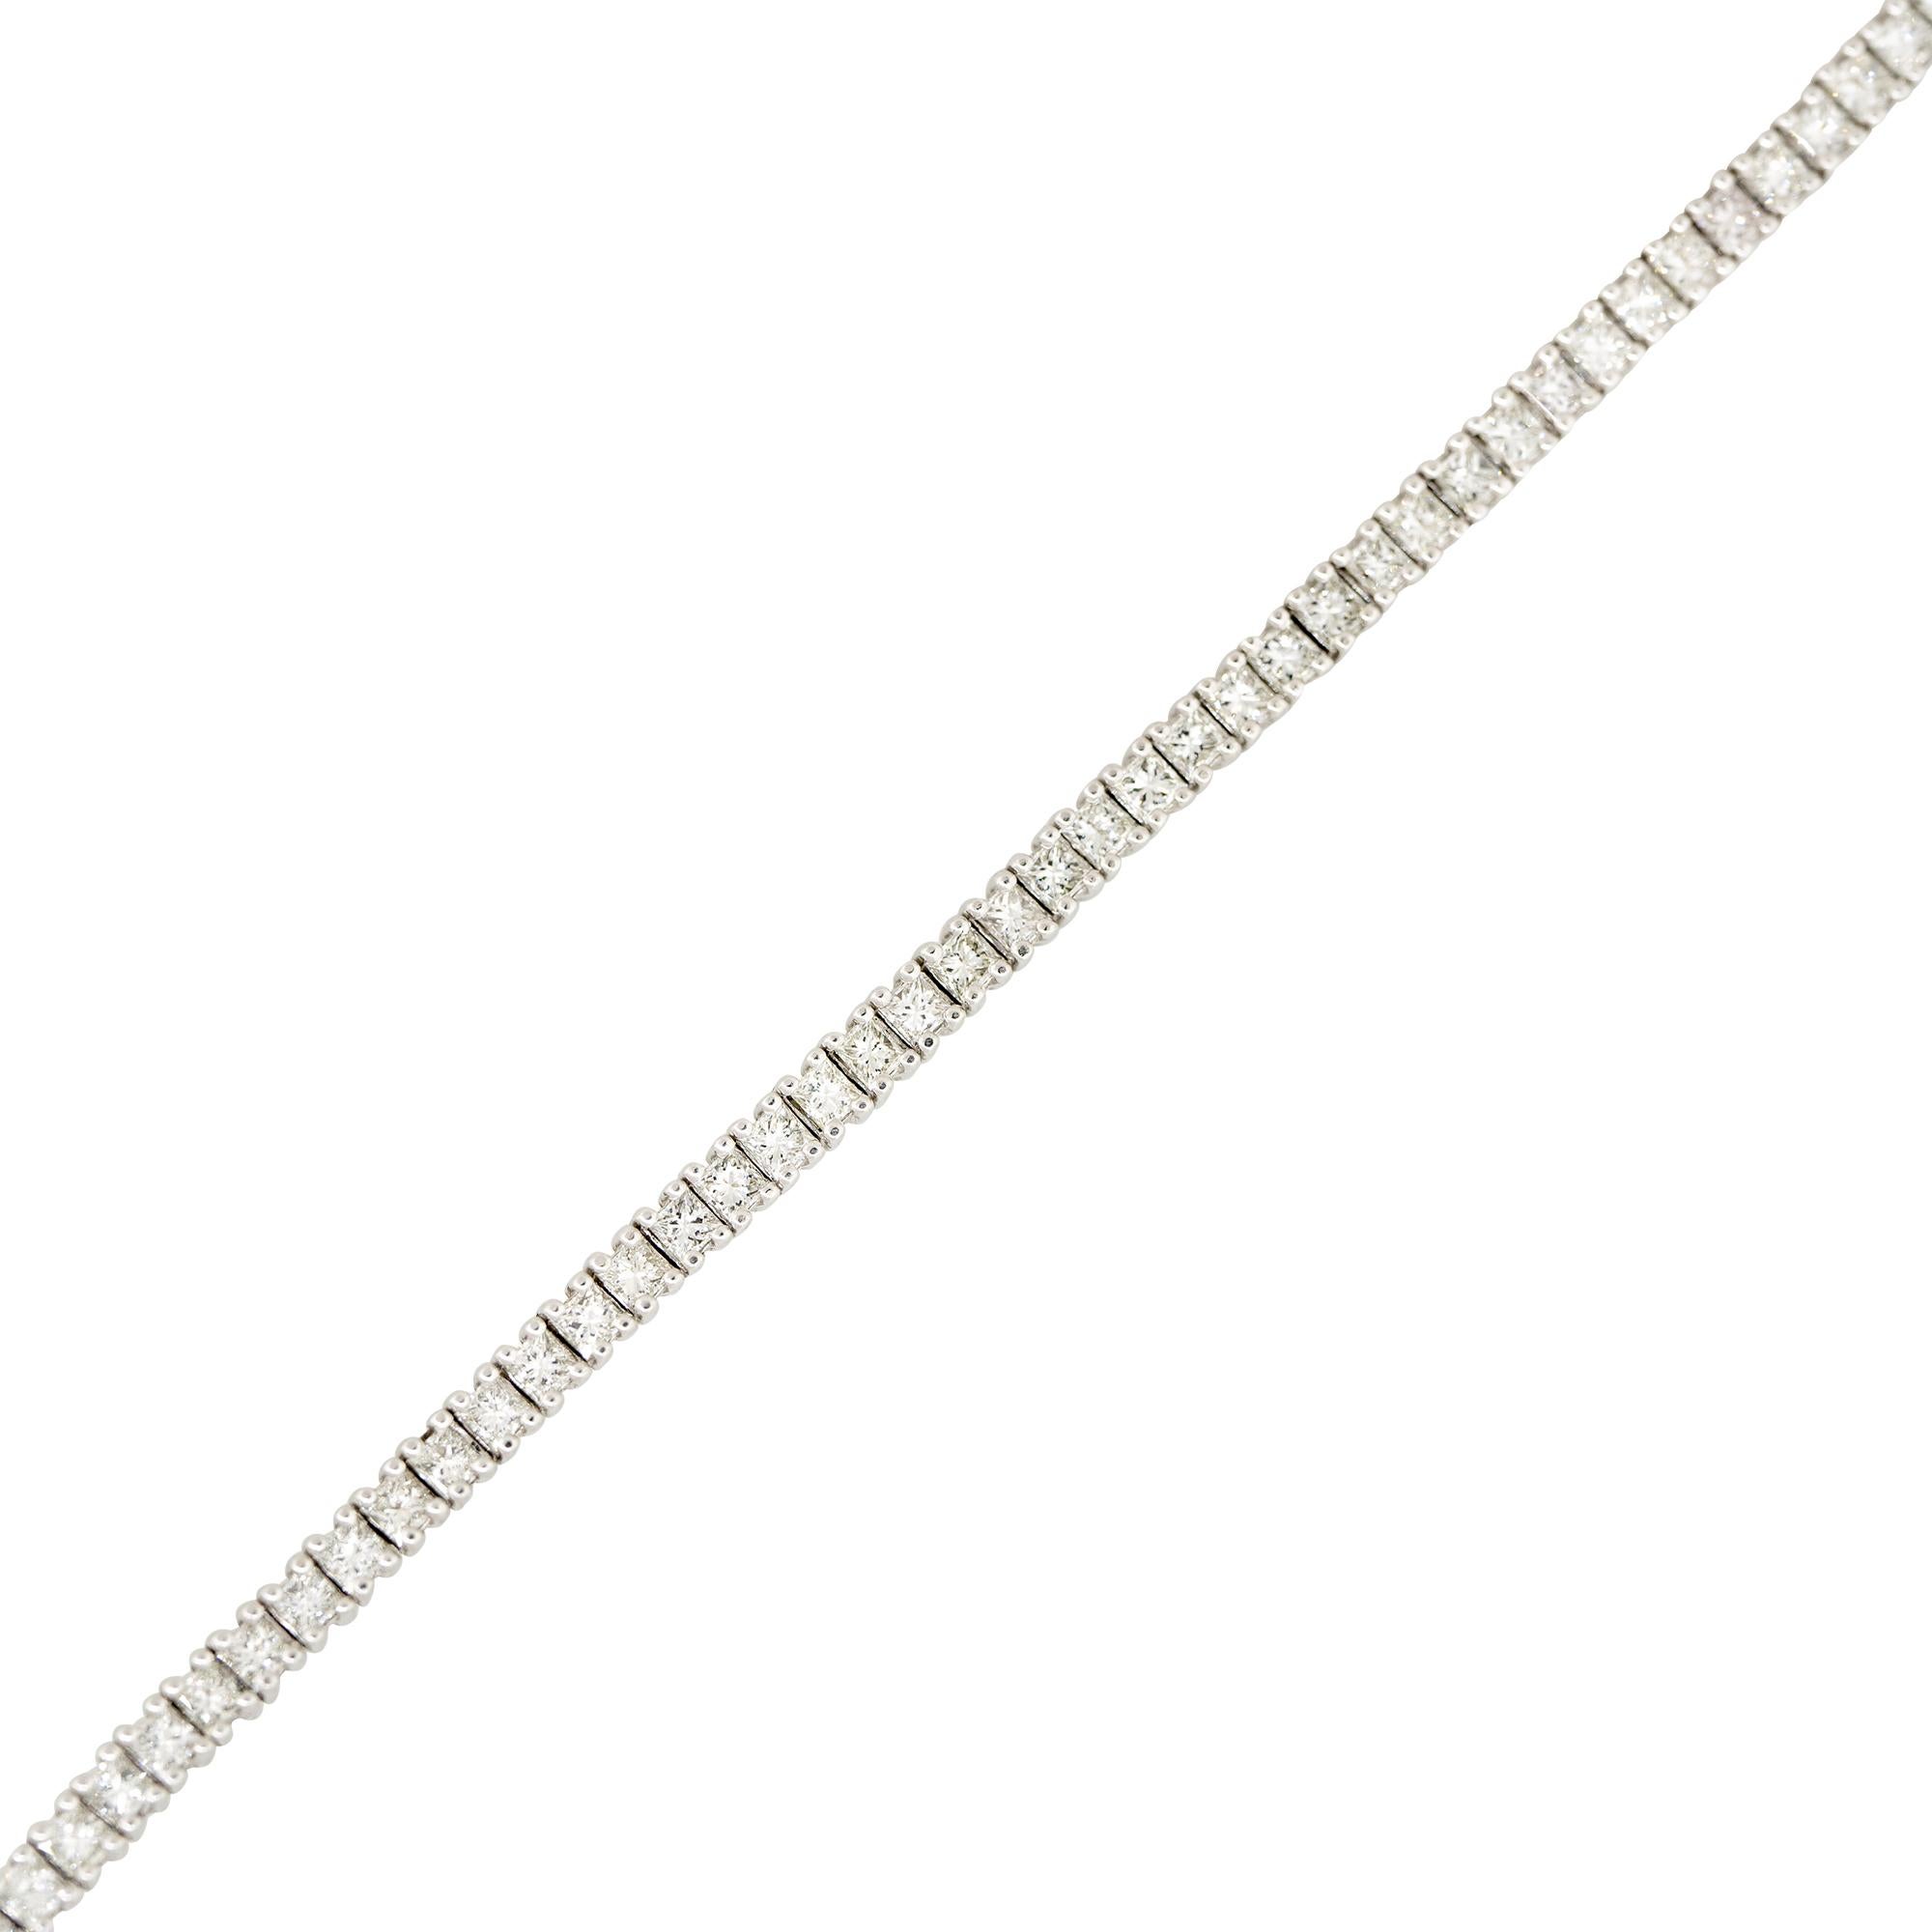 14k Weißgold 4,67ctw Prinzessinnenschliff Diamant-Tennis-Armband
MATERIAL: 14k Weißgold
Diamanten Details: Ungefähr 4,67ctw von Diamanten im Princess-Schliff. Insgesamt gibt es 67 Steine. Diamanten sind ungefähr G/H in Farbe und ungefähr VS in